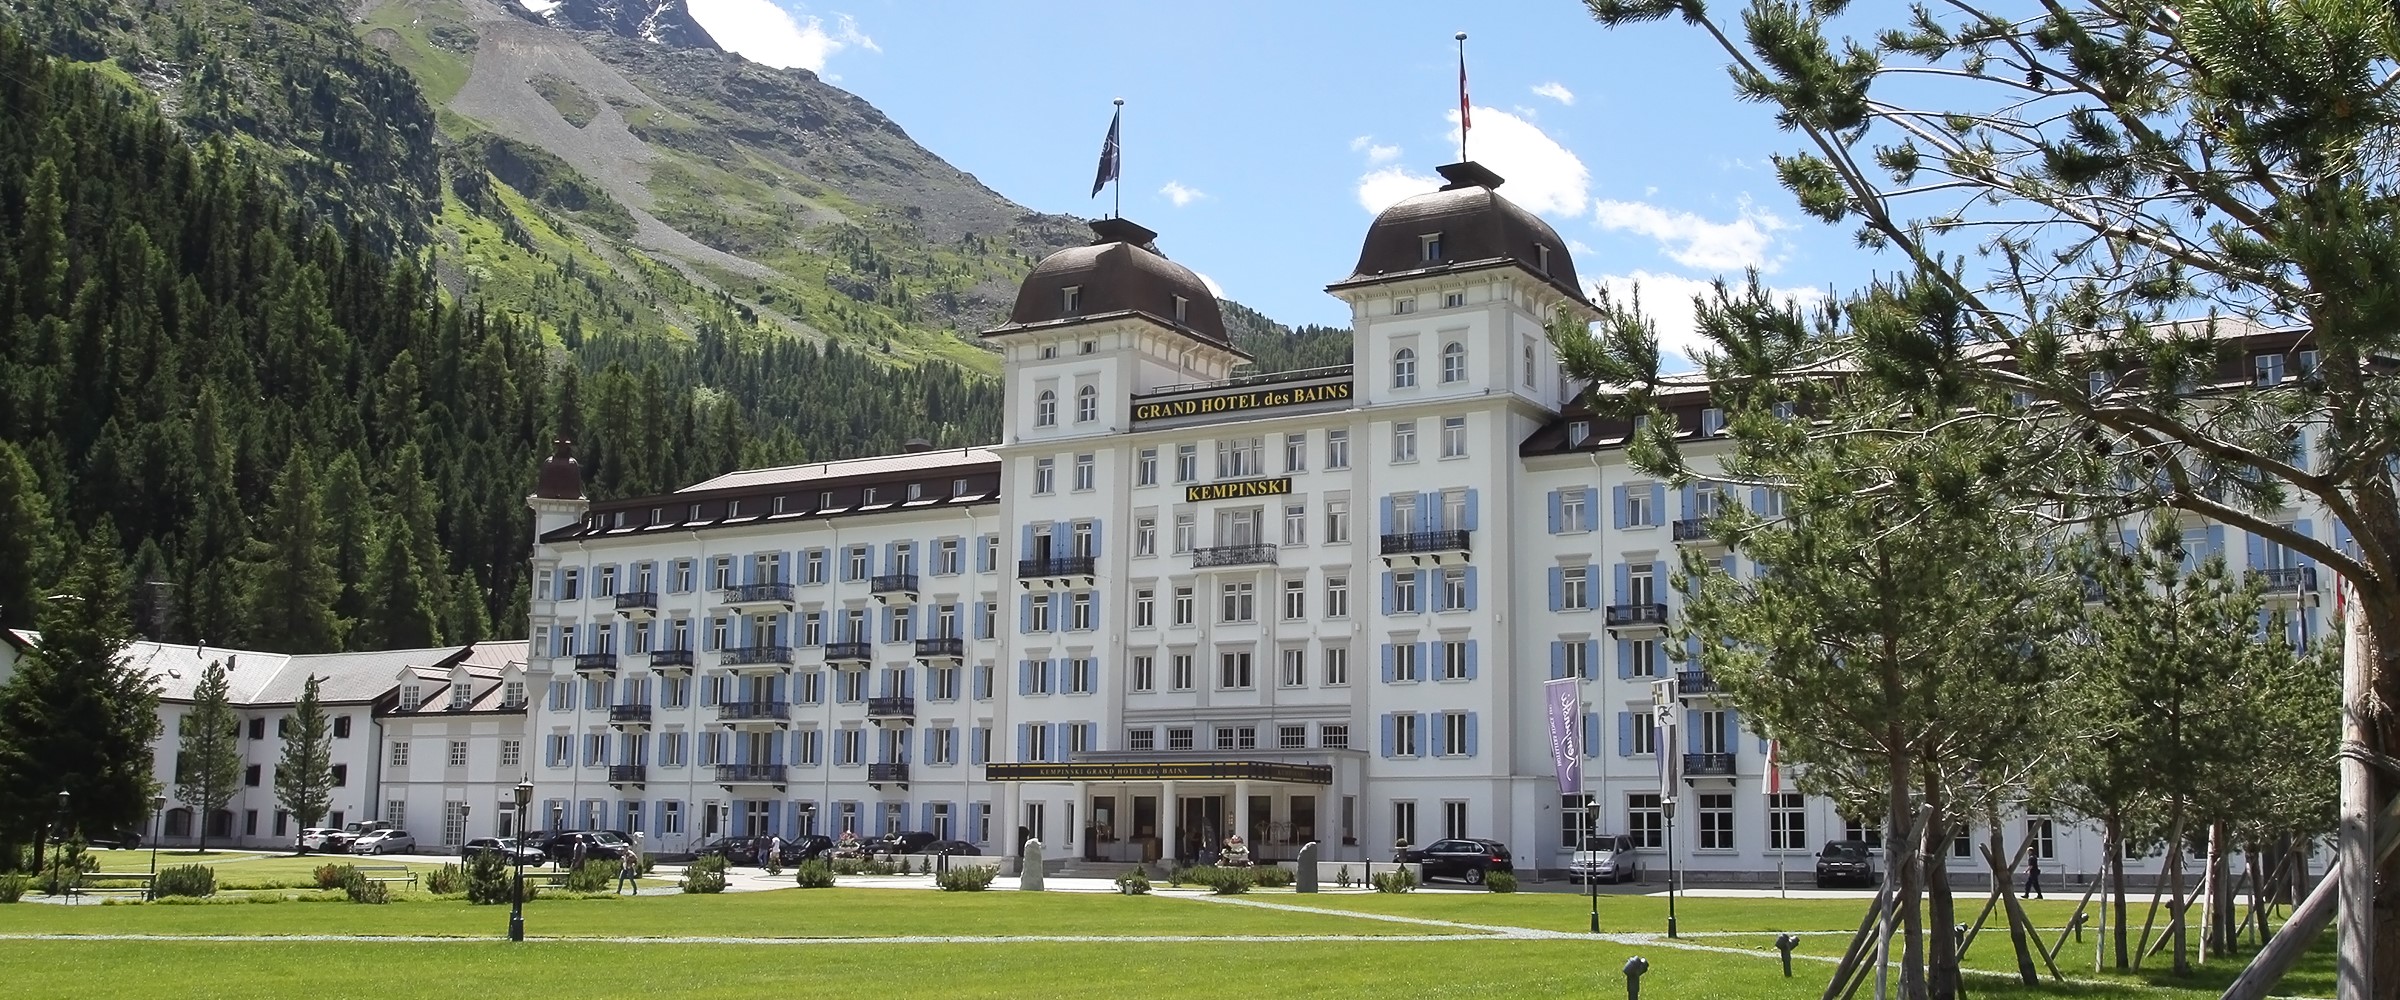 Det østlige Schweiz, Schweiz, Kempinski Grand Hotel Des Bains